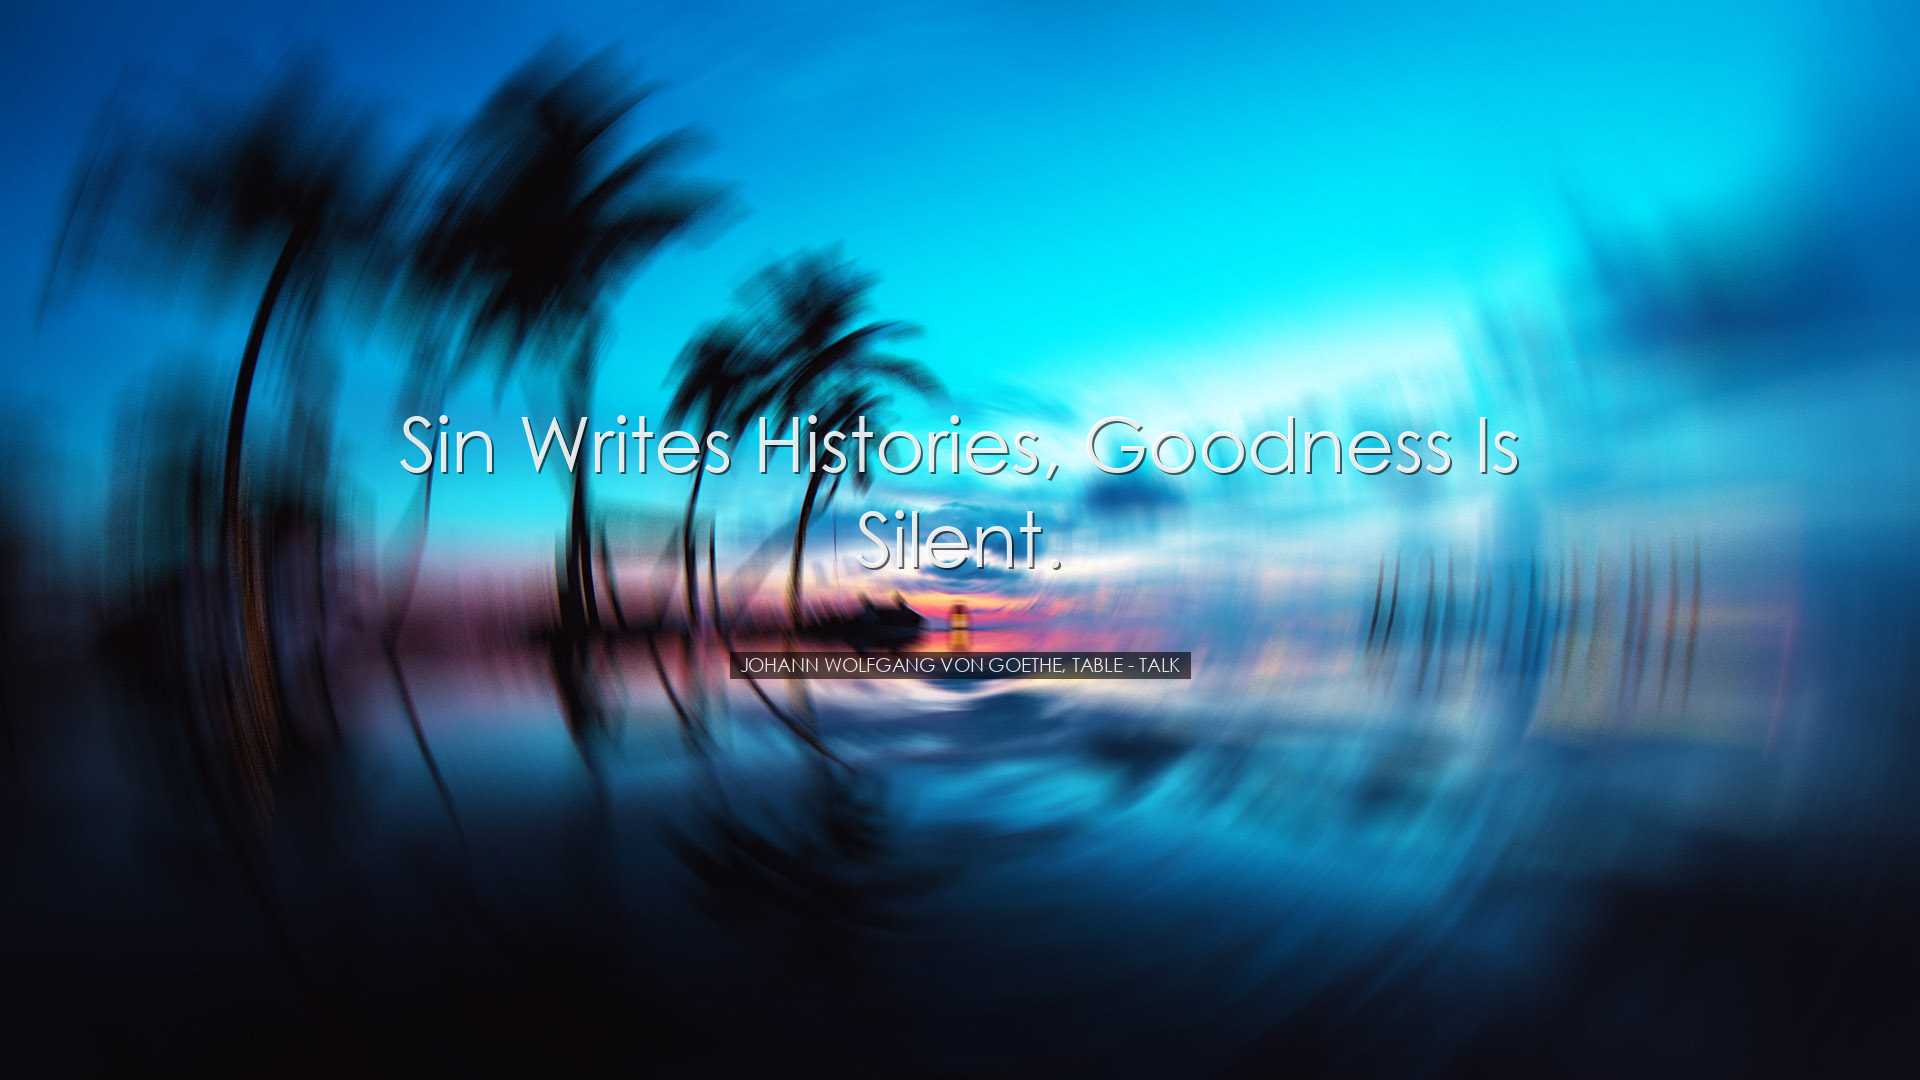 Sin writes histories, goodness is silent. - Johann Wolfgang von Go